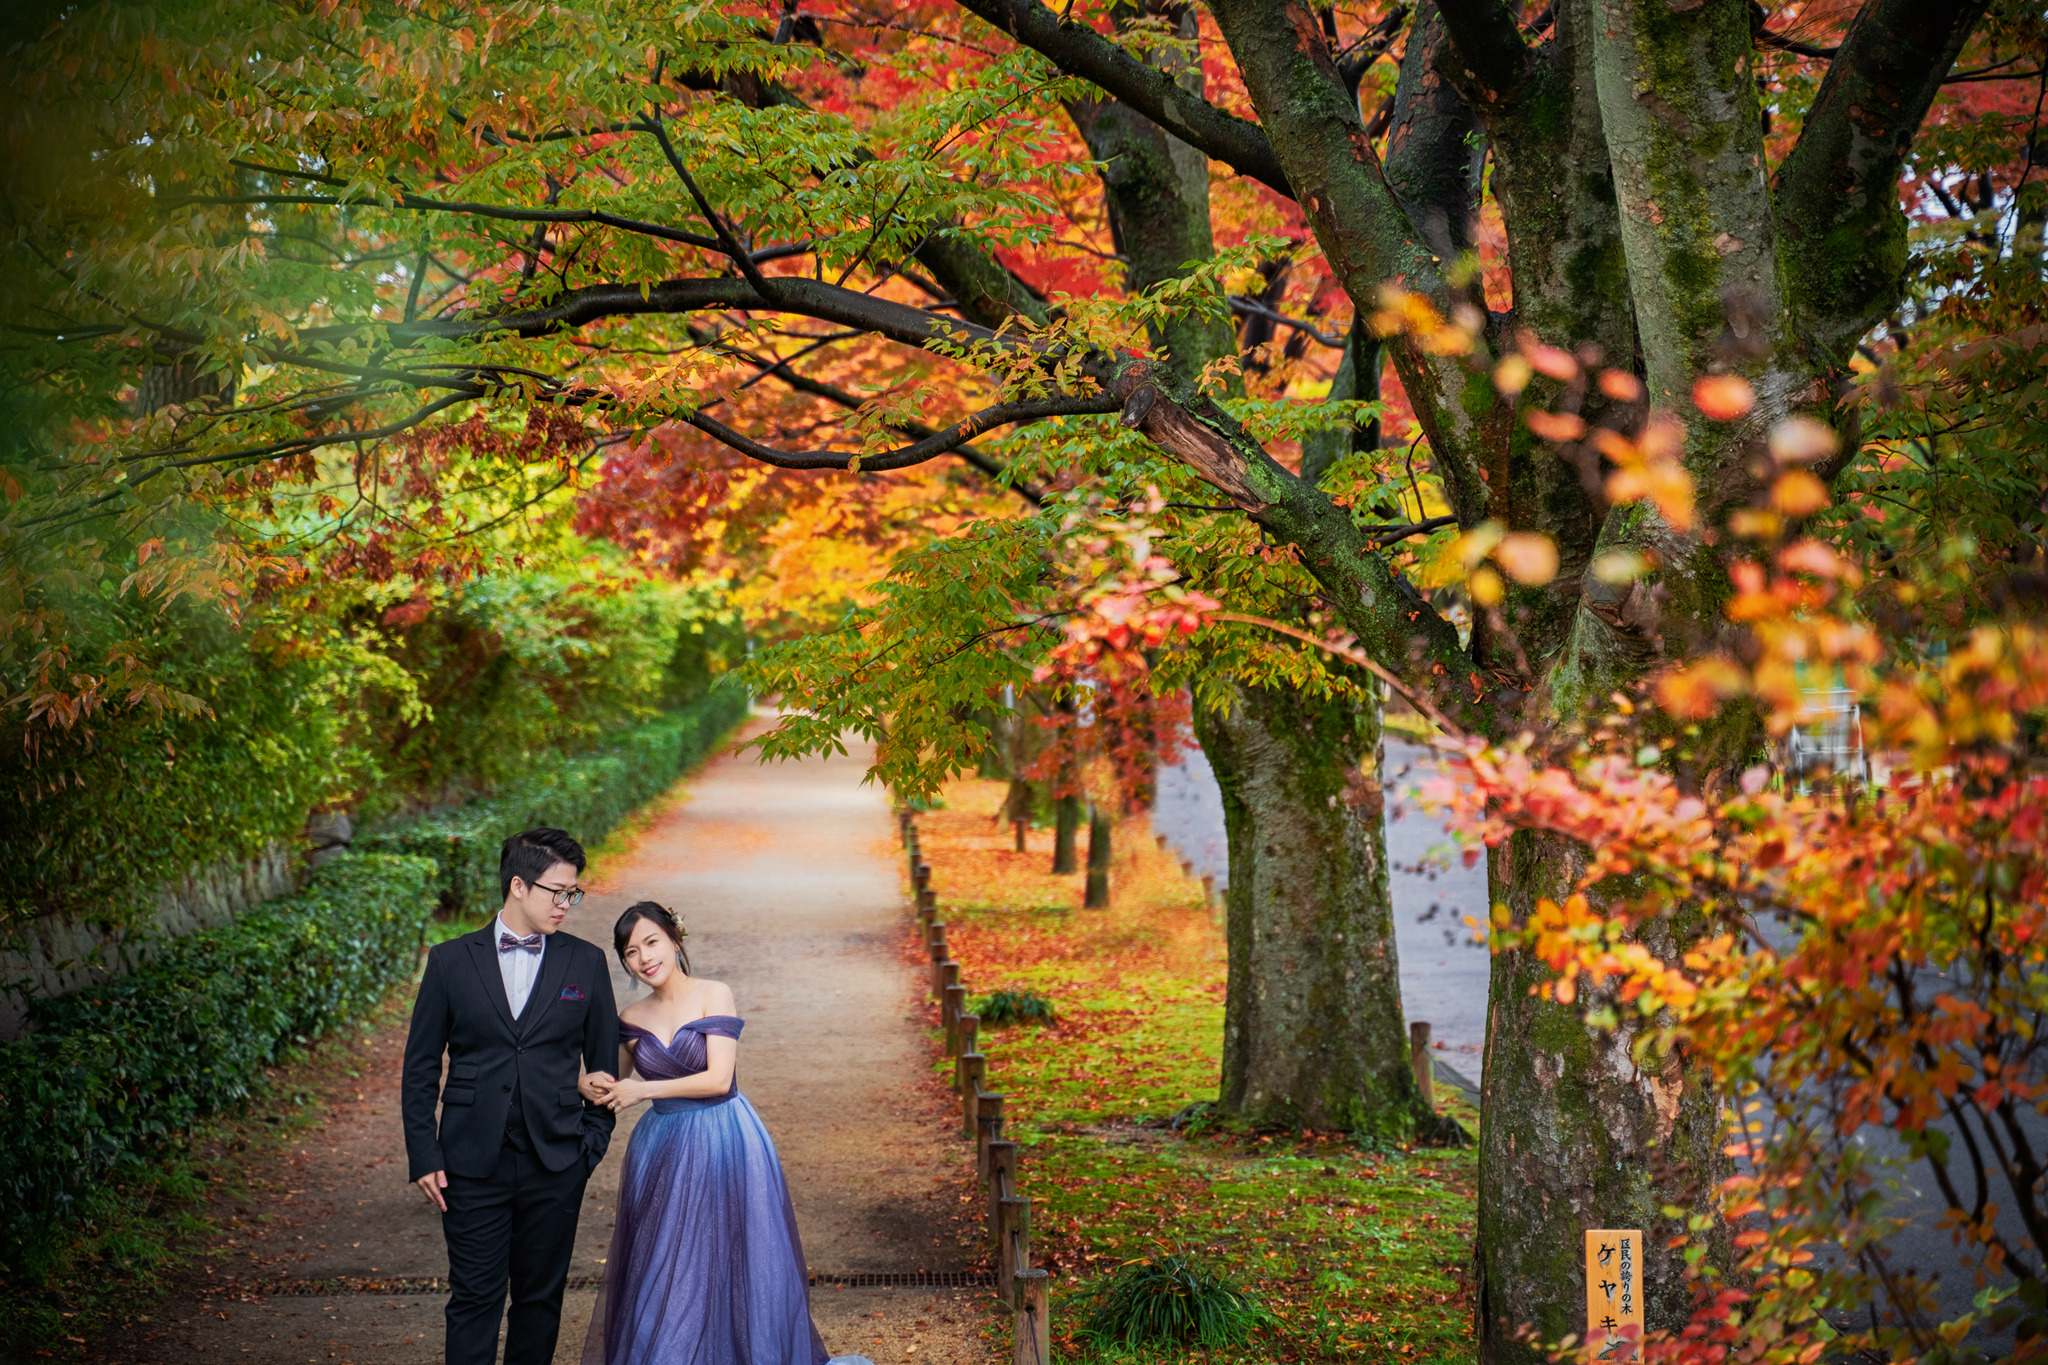 京都楓葉婚紗 二年版 日本京都遊玩 瑪朵婚紗 日本婚紗推薦 楓葉和服婚紗 清水寺 鴨川 嵐山